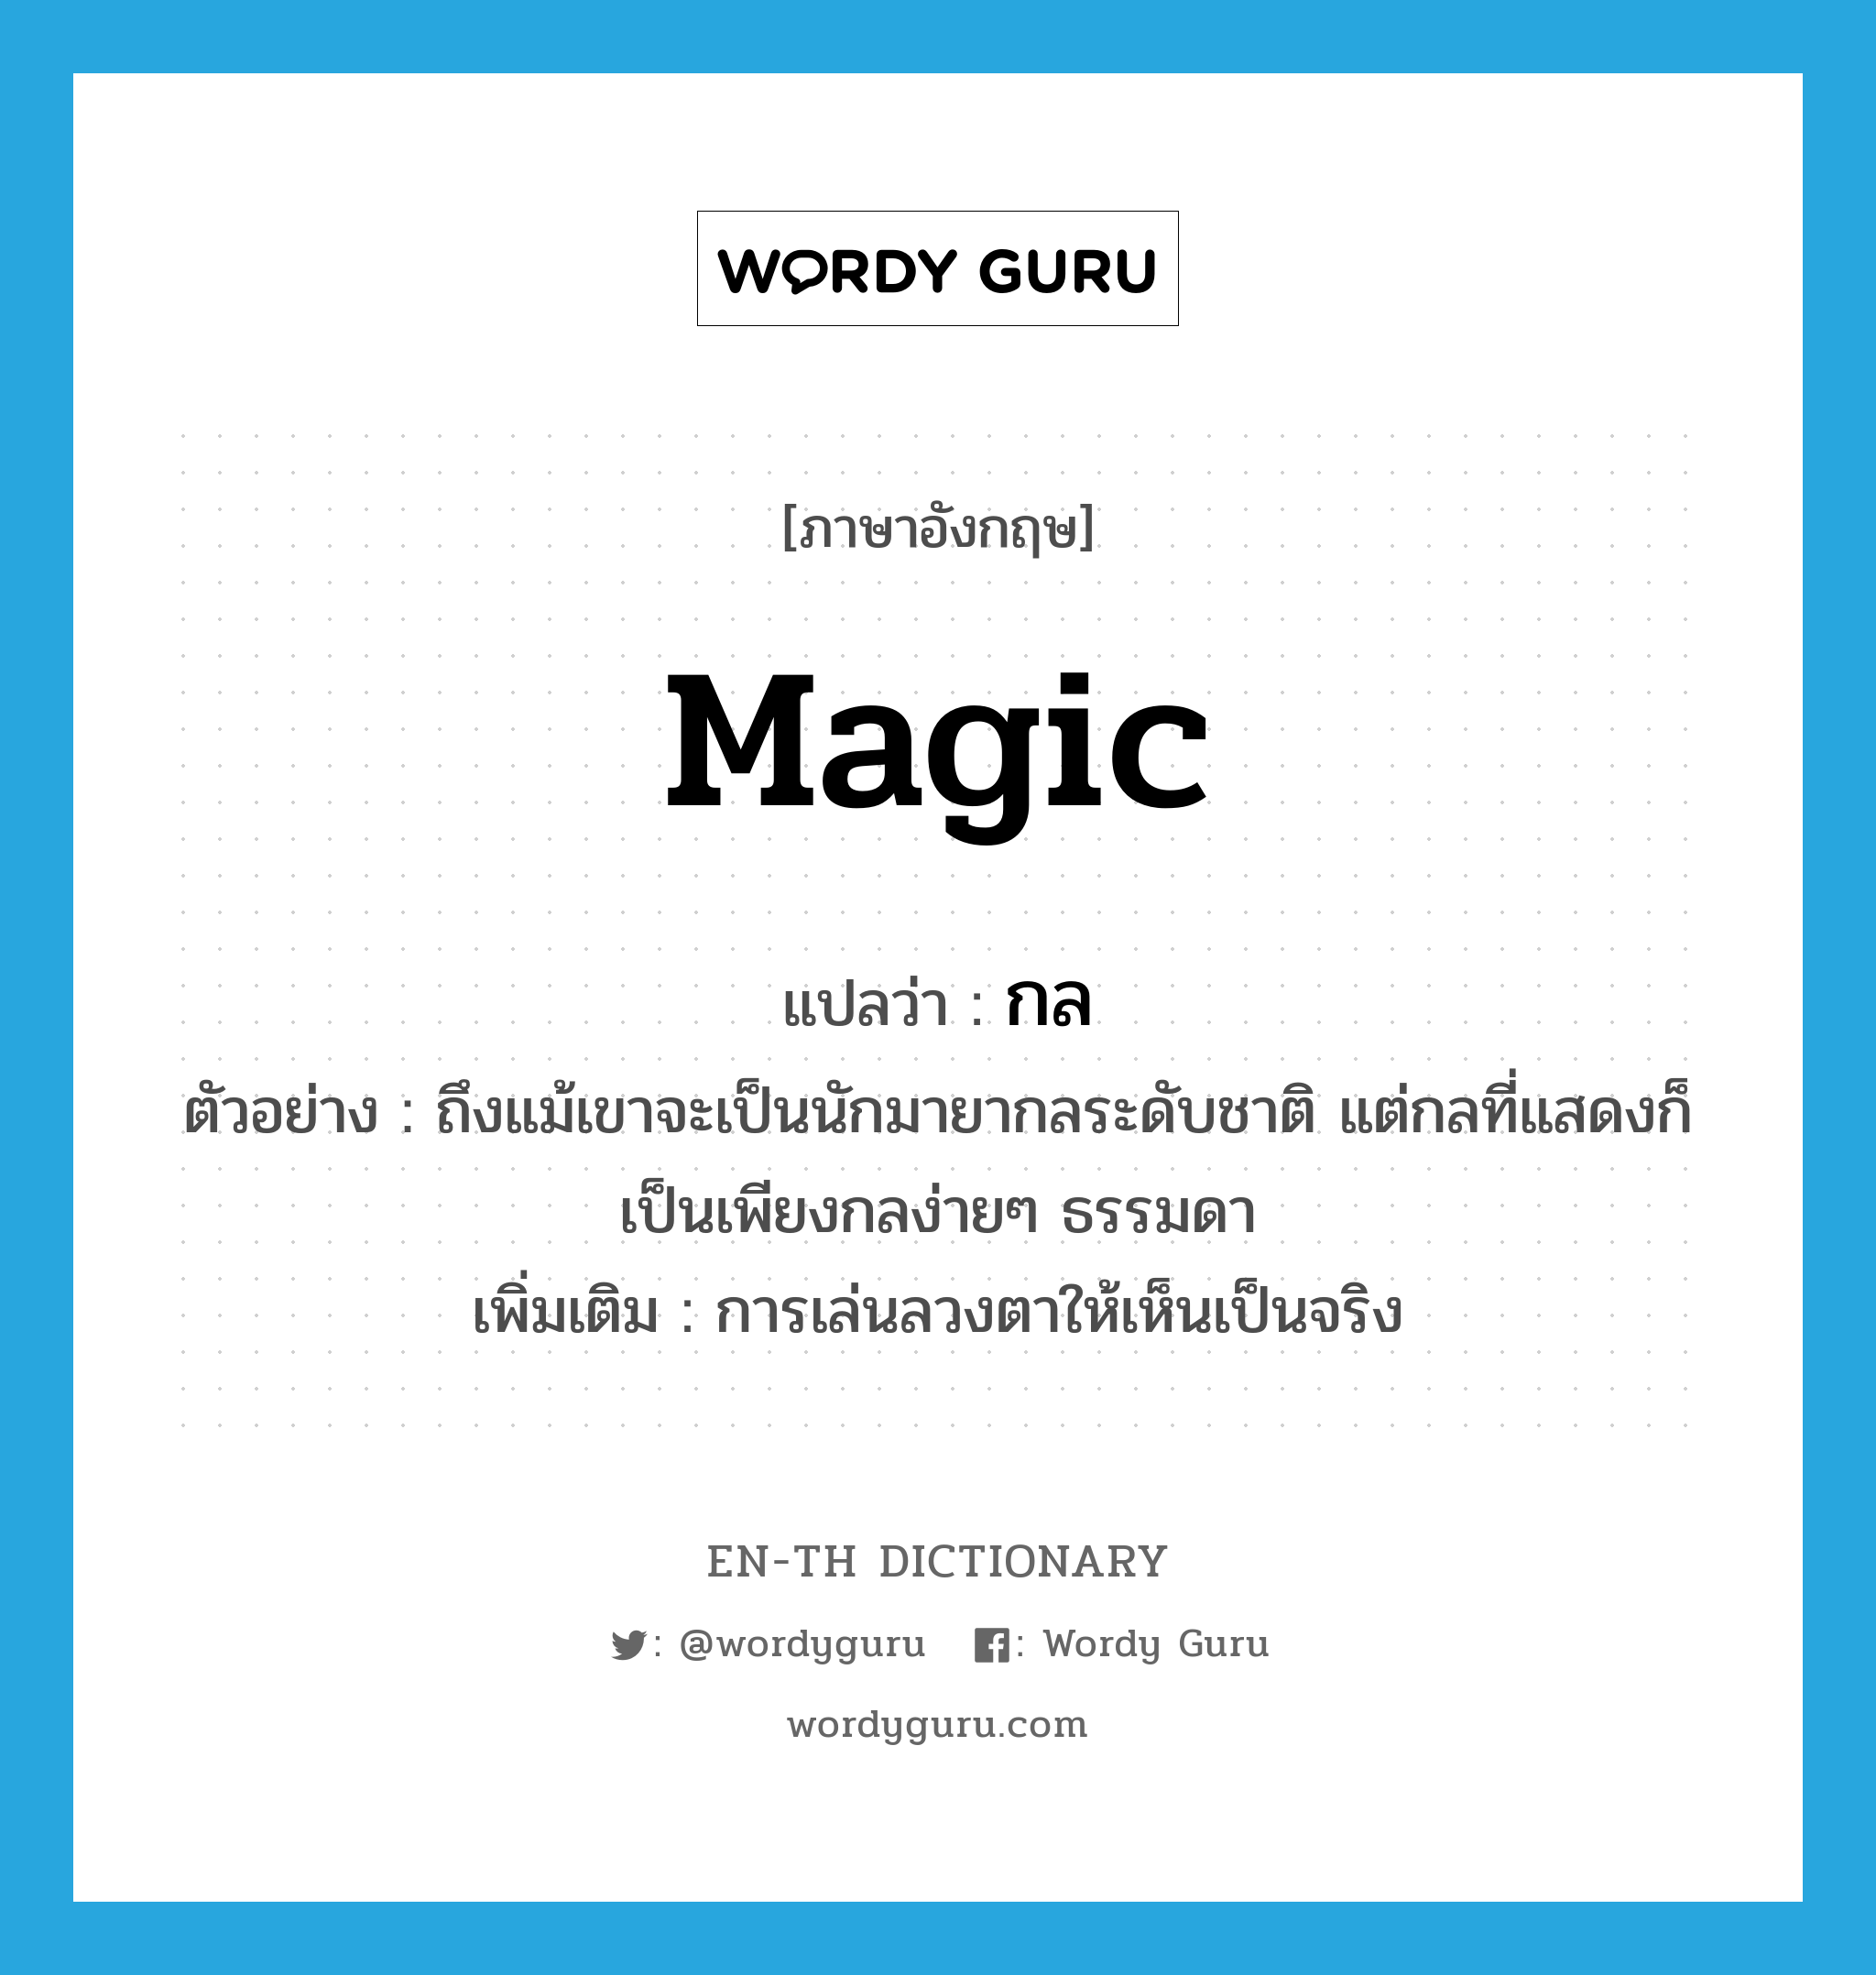 magic แปลว่า?, คำศัพท์ภาษาอังกฤษ magic แปลว่า กล ประเภท N ตัวอย่าง ถึงแม้เขาจะเป็นนักมายากลระดับชาติ แต่กลที่แสดงก็เป็นเพียงกลง่ายๆ ธรรมดา เพิ่มเติม การเล่นลวงตาให้เห็นเป็นจริง หมวด N